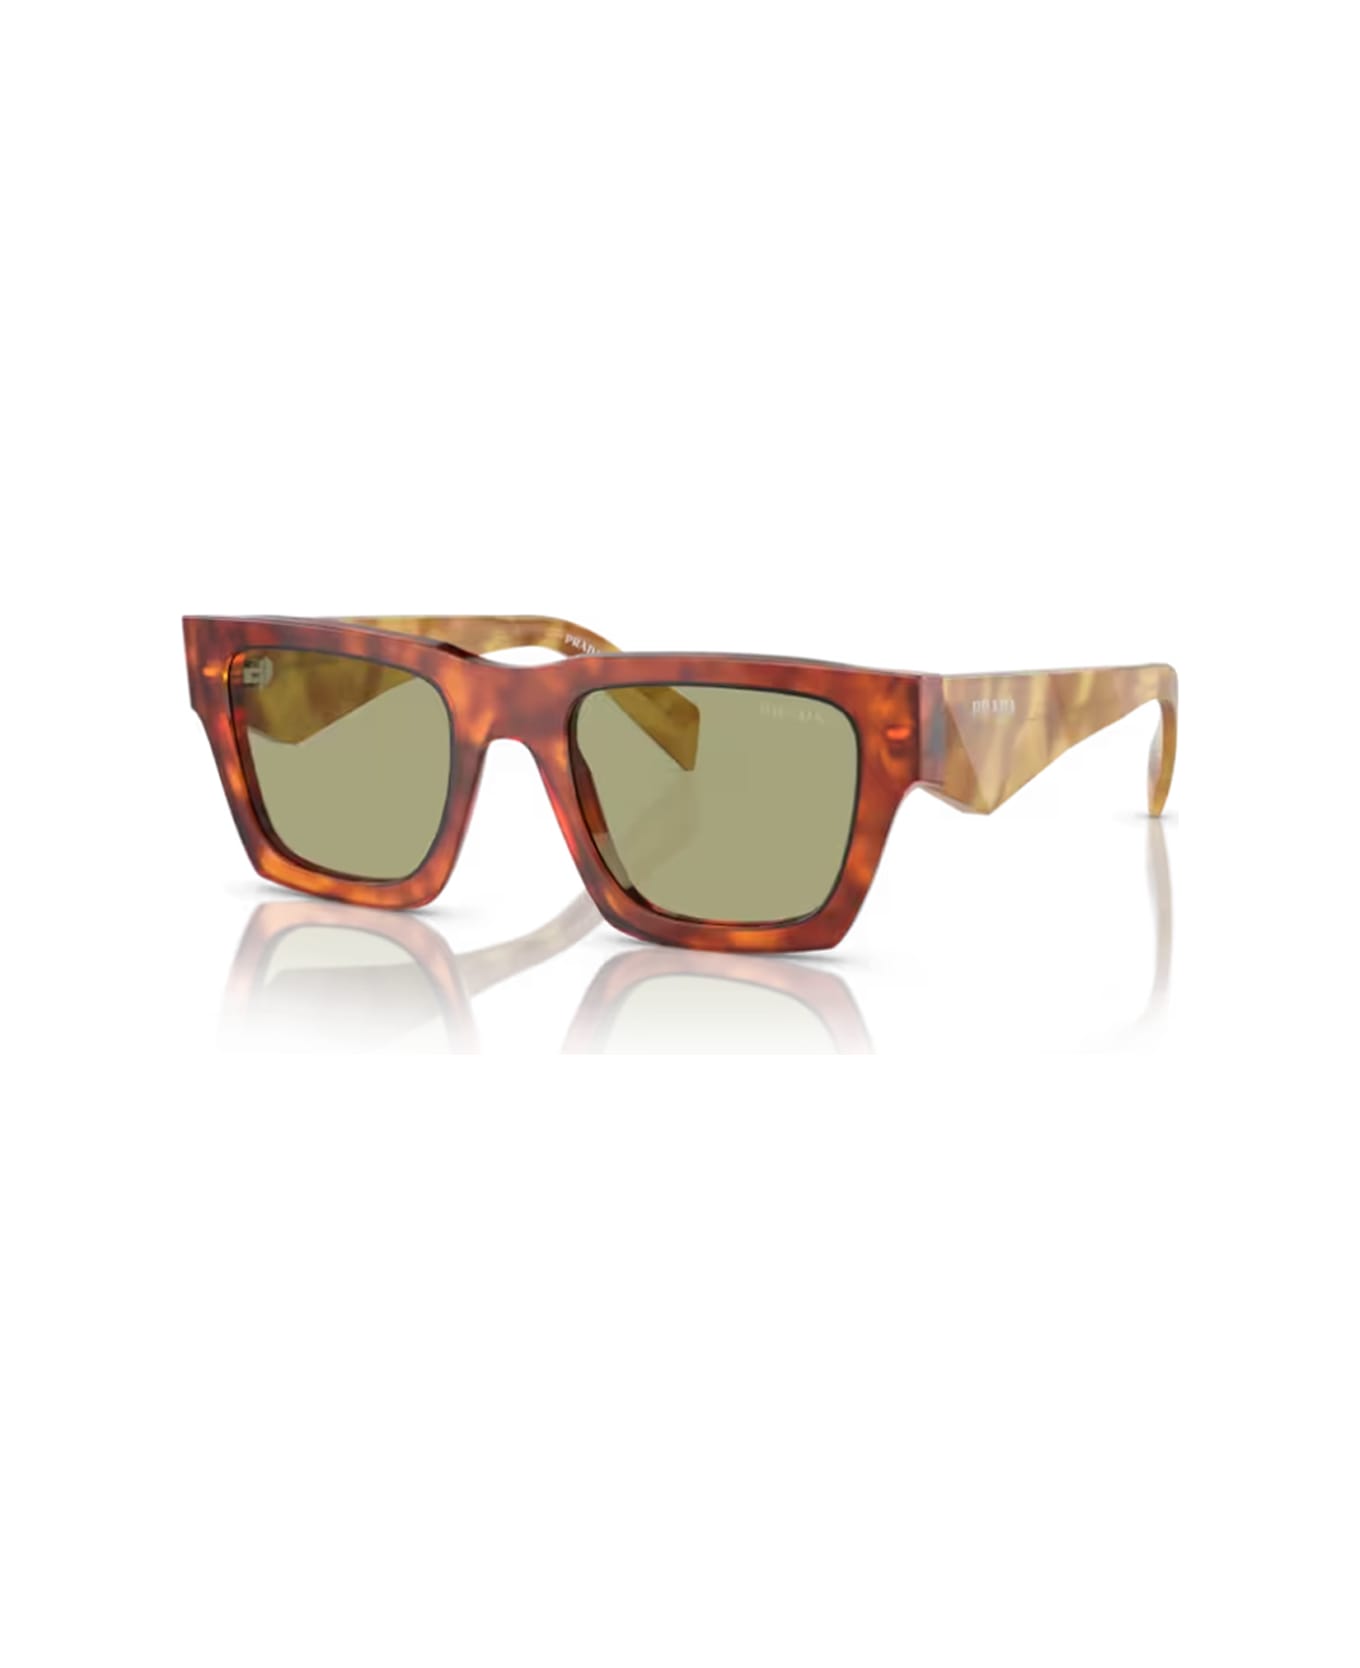 Prada Eyewear Pra06s 11p60c Sunglasses - Arancione